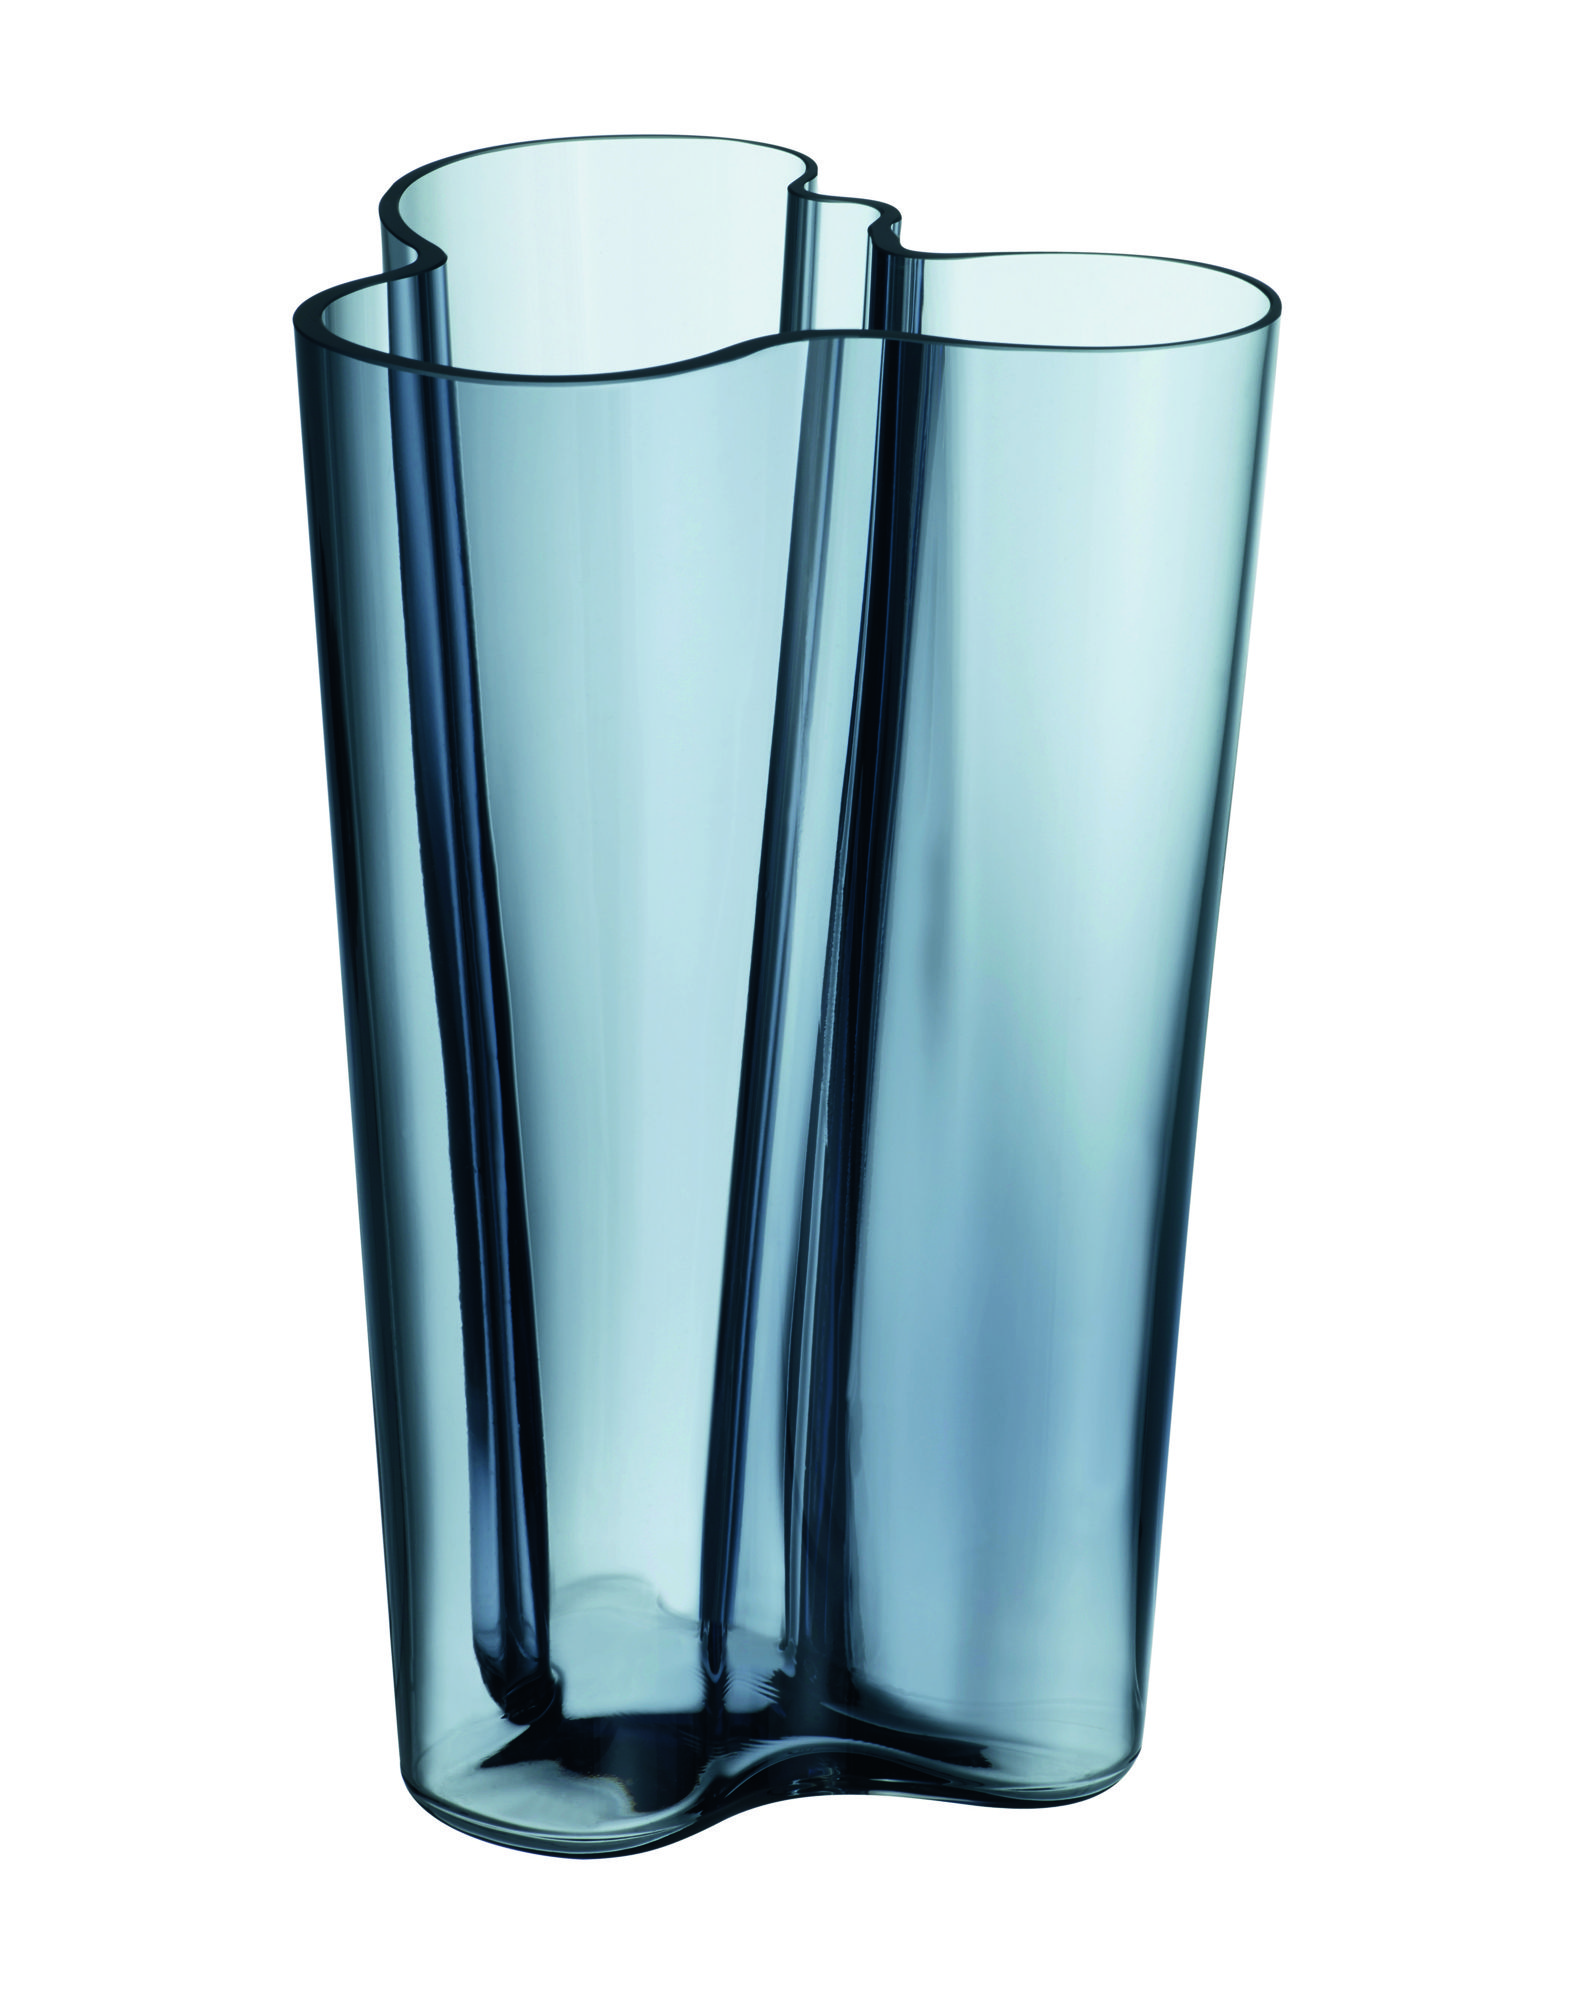 《送料無料》IITTALA Unisex ベース ブルーグレー 吹きガラス 100% Aalto